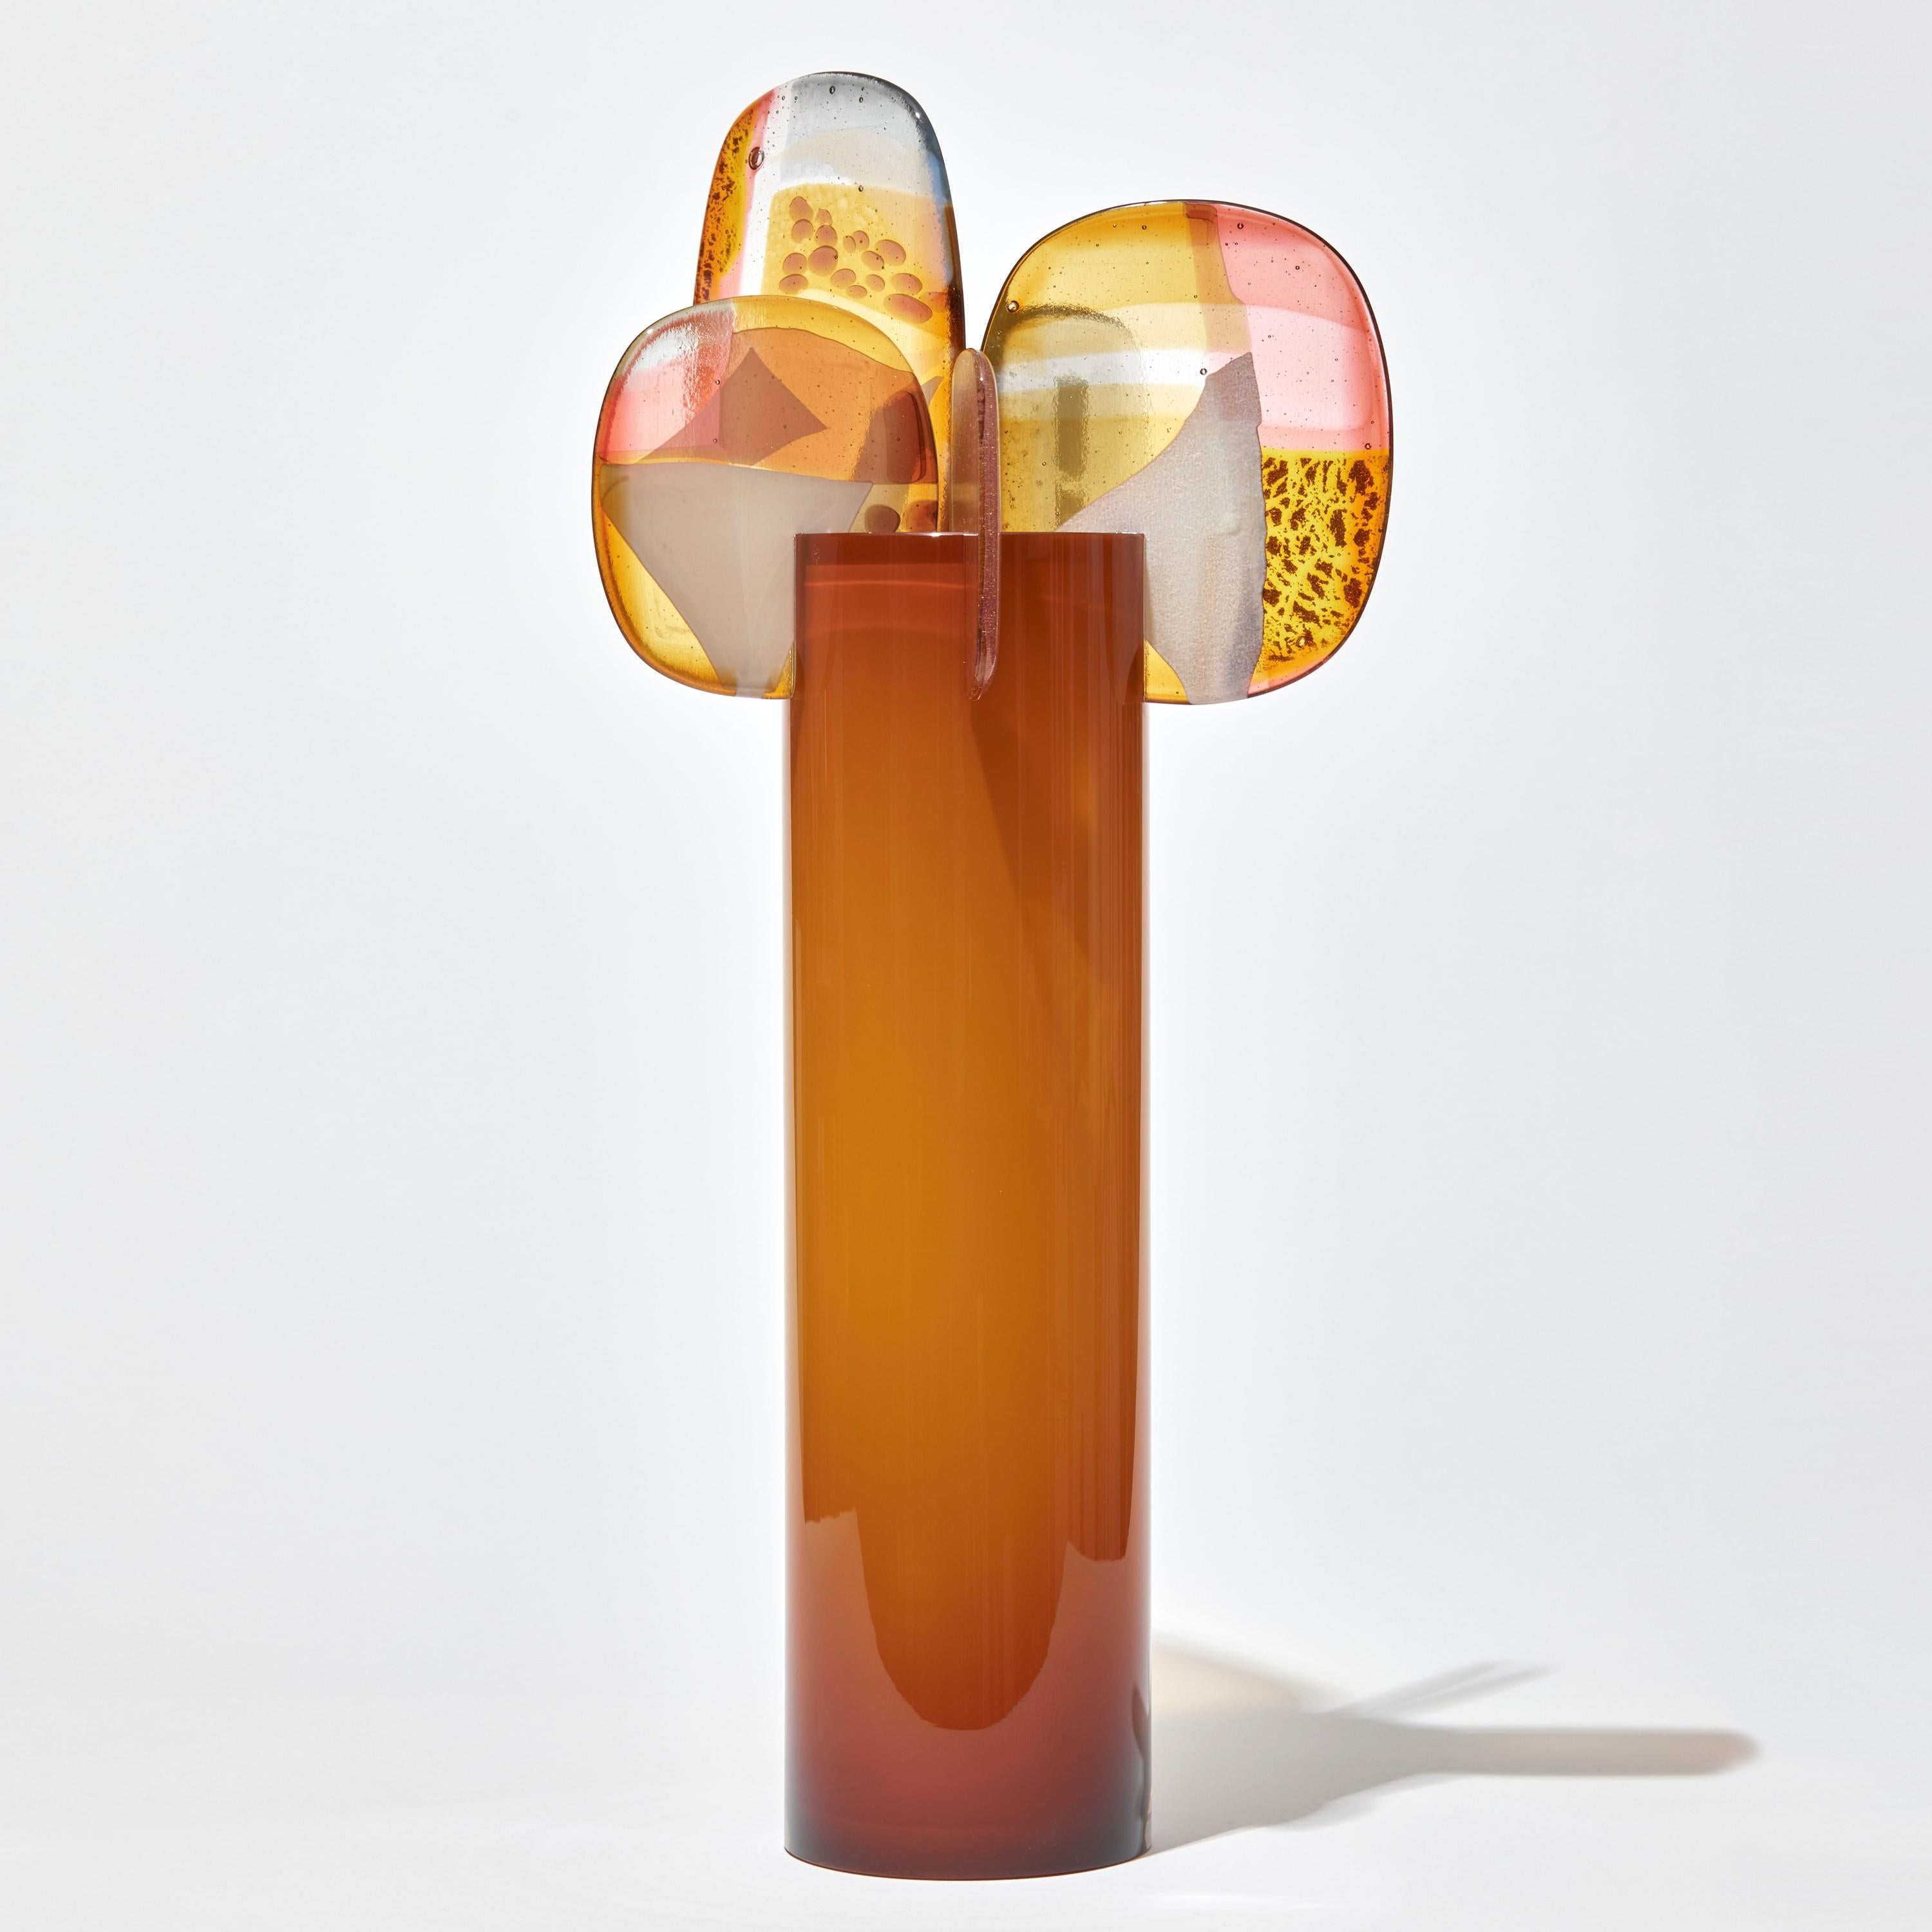 Organique Sculpture Paradise 04 en verre orange, or et rose d'Amy Cushing